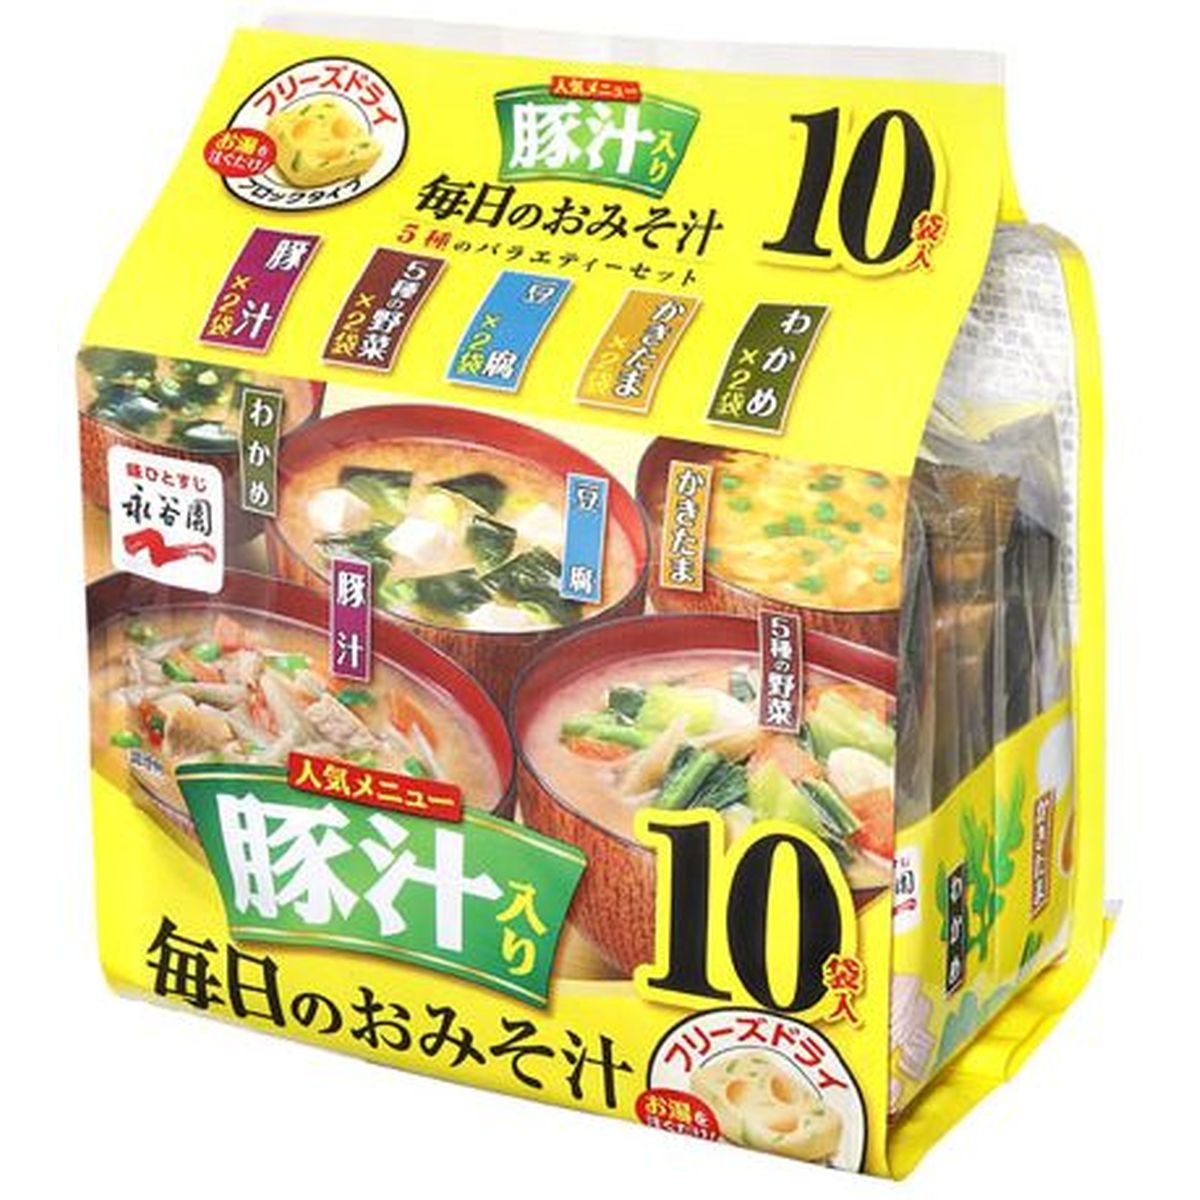 【4個入リ】永谷園 毎日ノオミソ汁 5種ノバラエティ 10袋